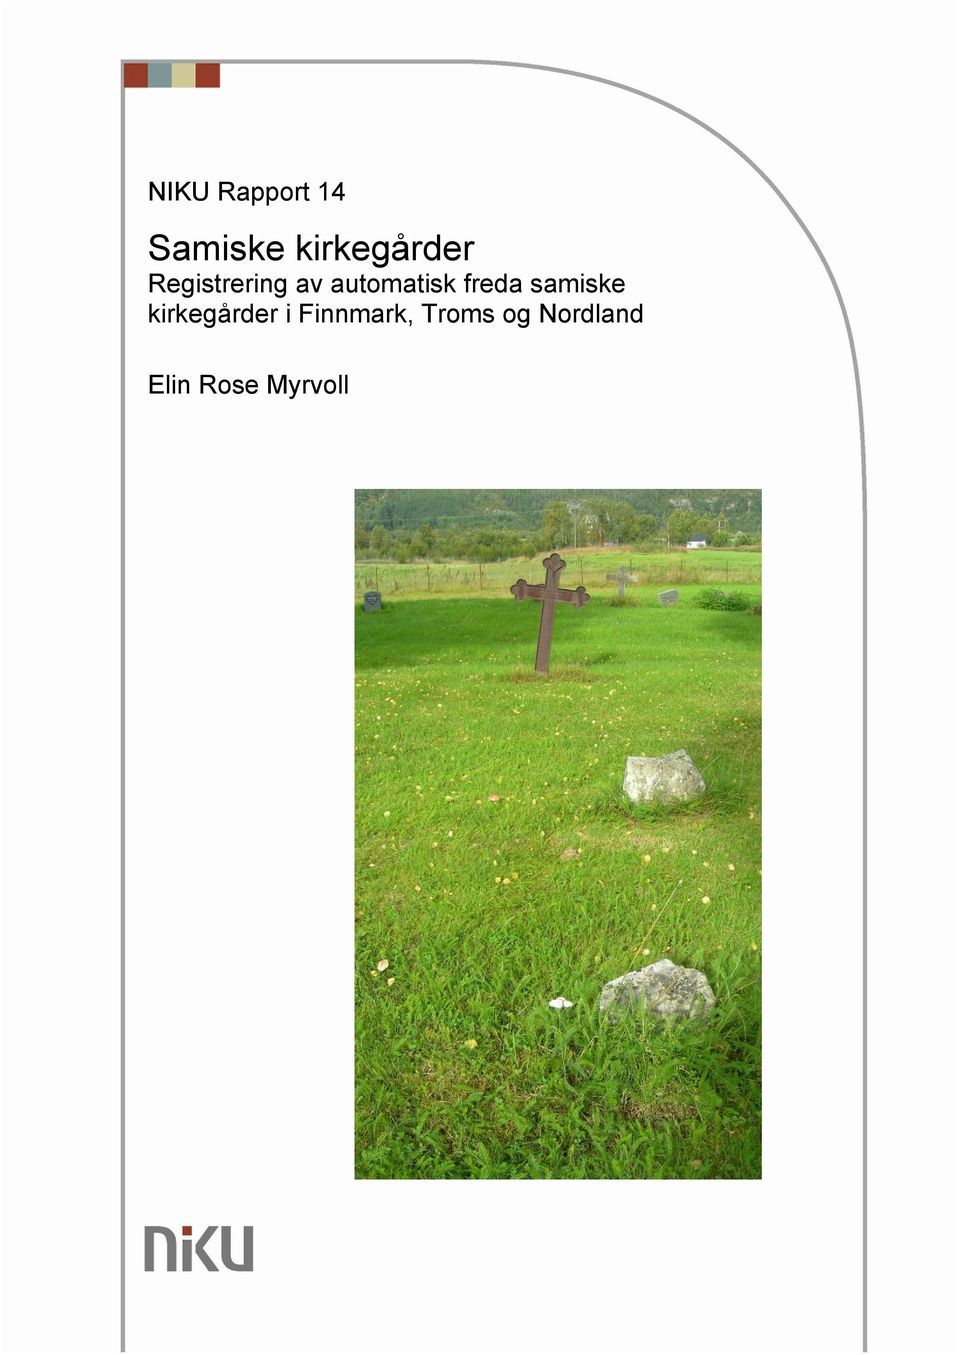 freda samiske er i Finnmark,